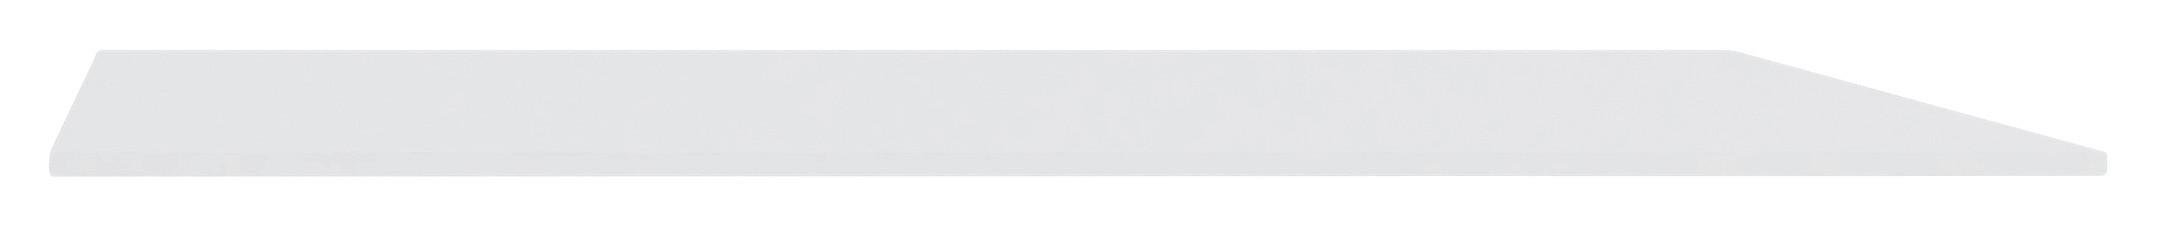 Vrchní Deska Unit-Elements - bílá, Moderní, kompozitní dřevo (137/42/1,6cm) - Ondega